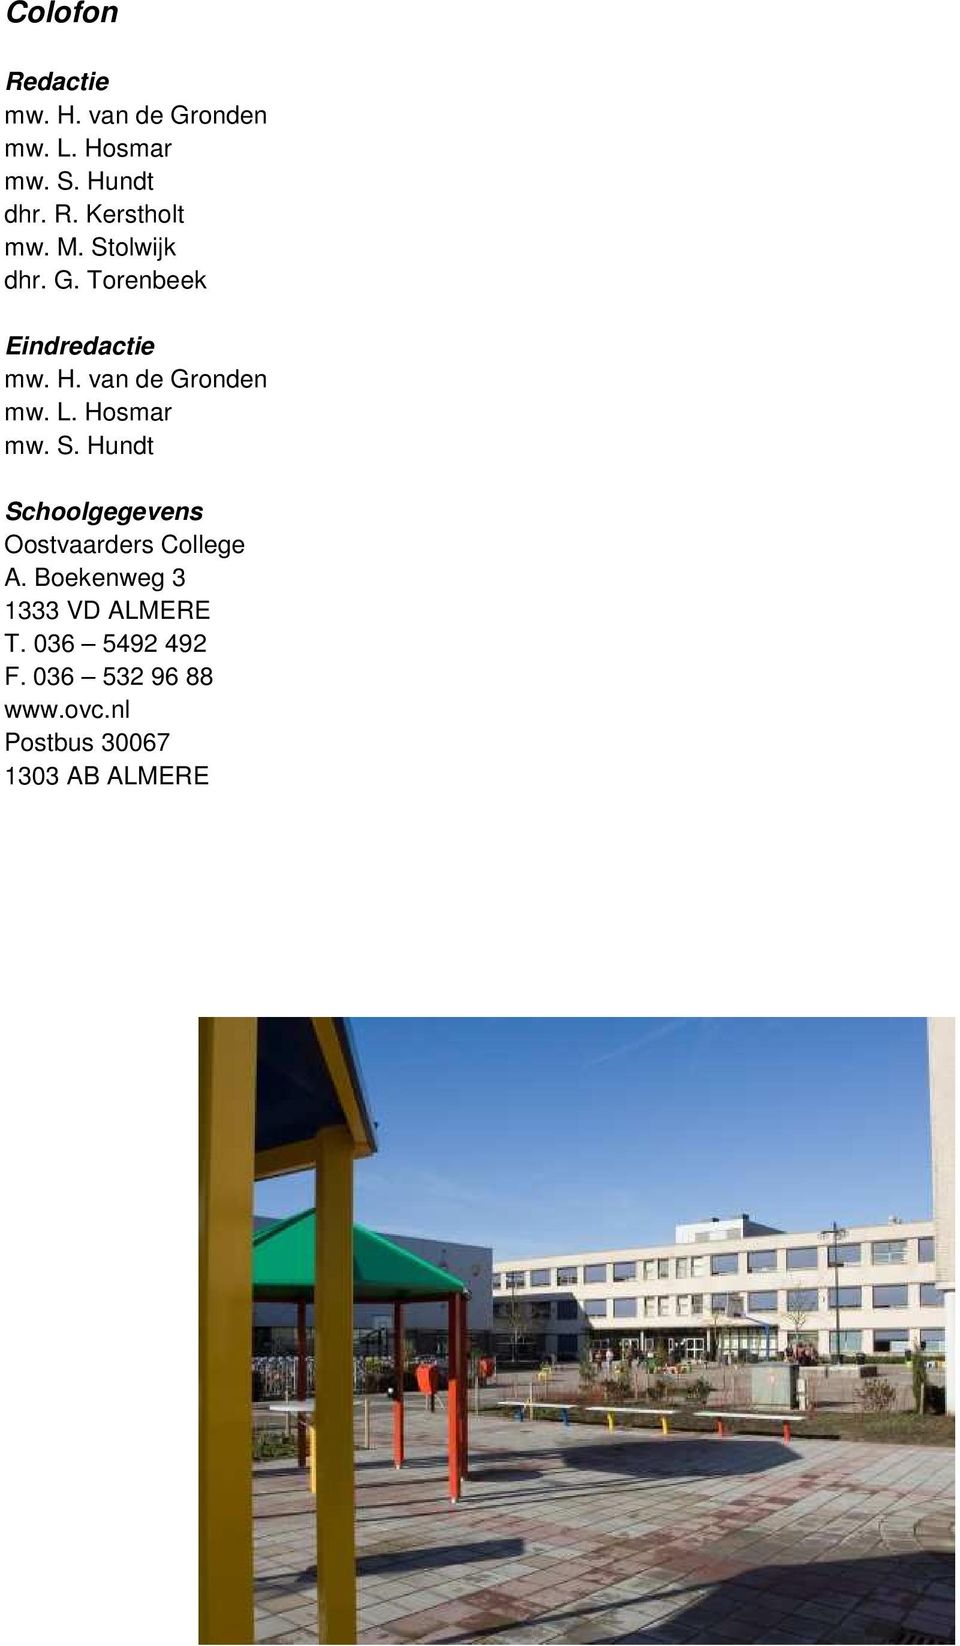 Hosmar mw. S. Hundt Schoolgegevens Oostvaarders College A.